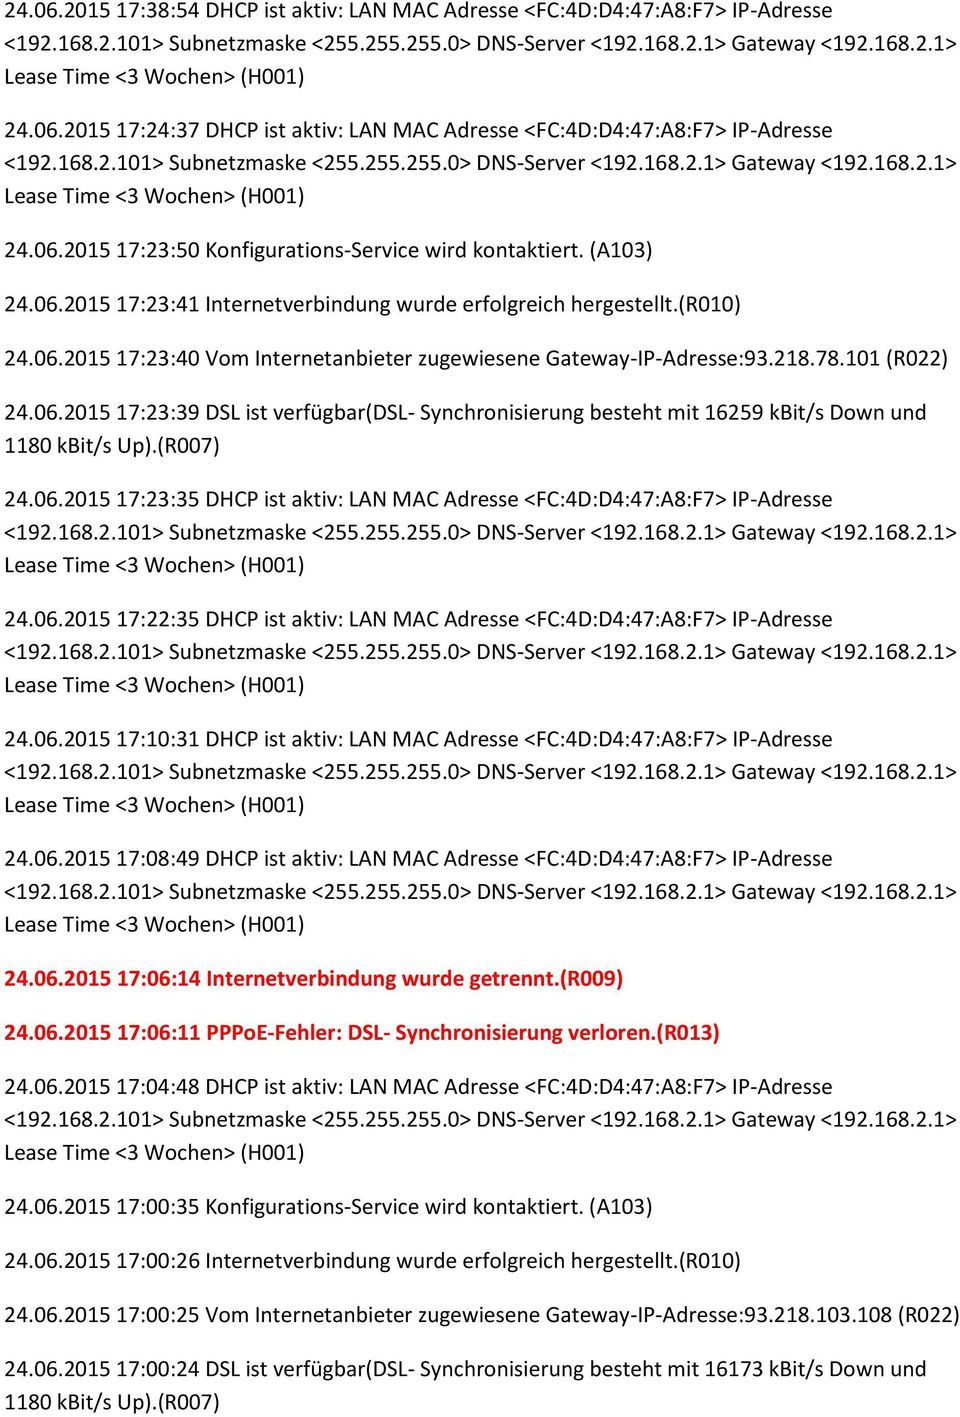 06.2015 17:23:35 DHCP ist aktiv: LAN MAC Adresse <FC:4D:D4:47:A8:F7> IP-Adresse 24.06.2015 17:22:35 DHCP ist aktiv: LAN MAC Adresse <FC:4D:D4:47:A8:F7> IP-Adresse 24.06.2015 17:10:31 DHCP ist aktiv: LAN MAC Adresse <FC:4D:D4:47:A8:F7> IP-Adresse 24.